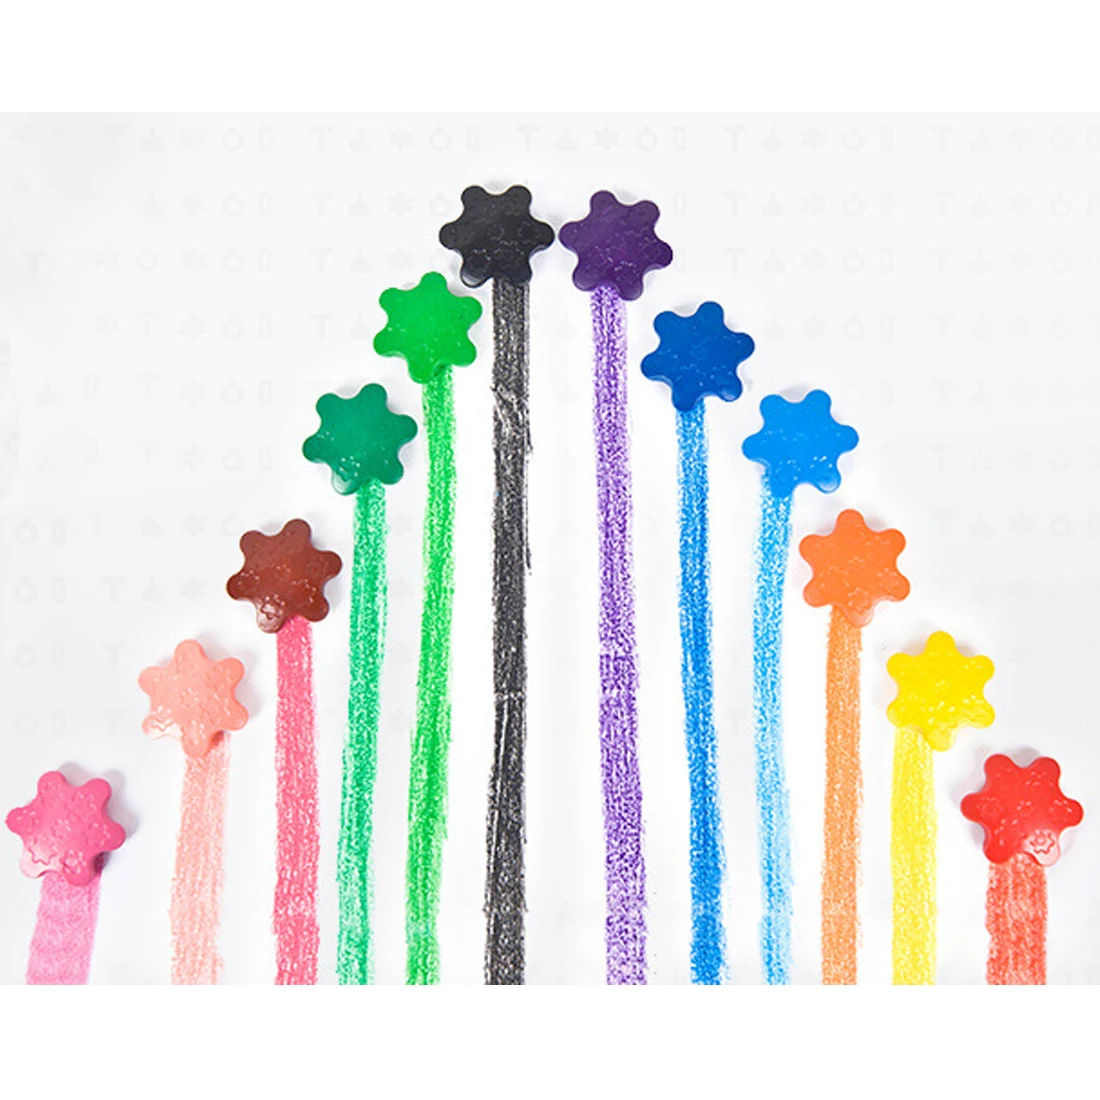 Rowsfire 12 цветов нетоксичные в форме снежинок краски мелки Пальмовая ручка моющиеся палочки мелки для детей ясельного возраста